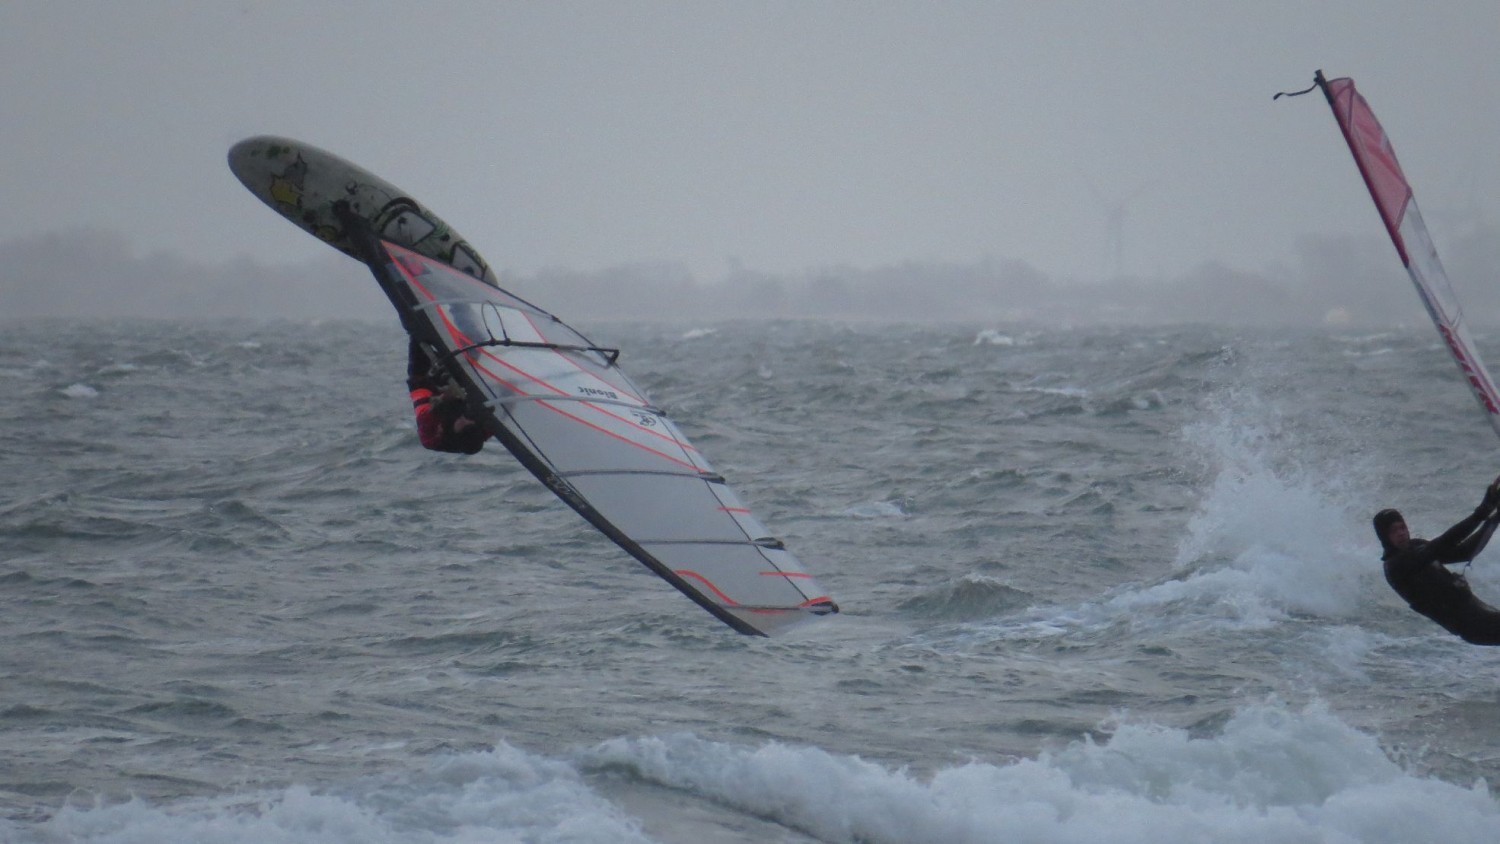 01.12.2013 - Heiligenhafen - "Surfers Paradise"